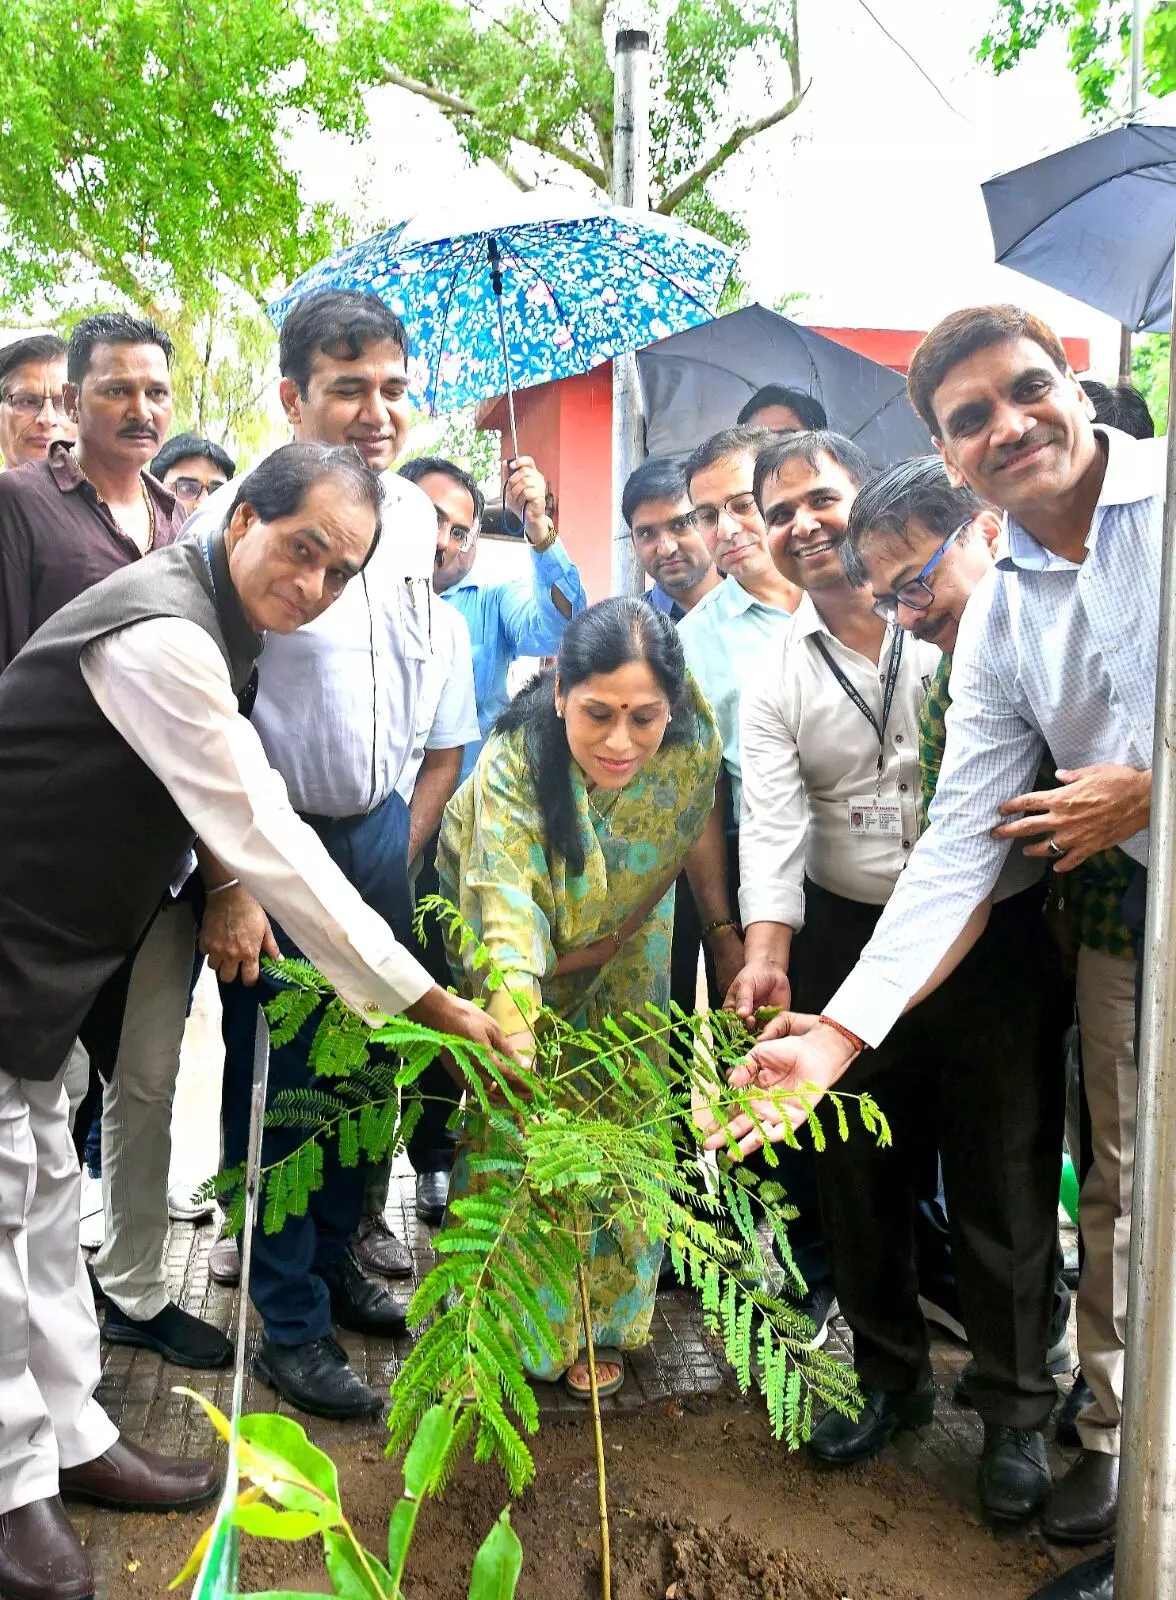 National Doctors Day वृक्षारोपणअभियान का शुभारम्भ प्रदेश के चिकित्सा संस्थानों में लगाए जाएंगे 1 लाख पौधे